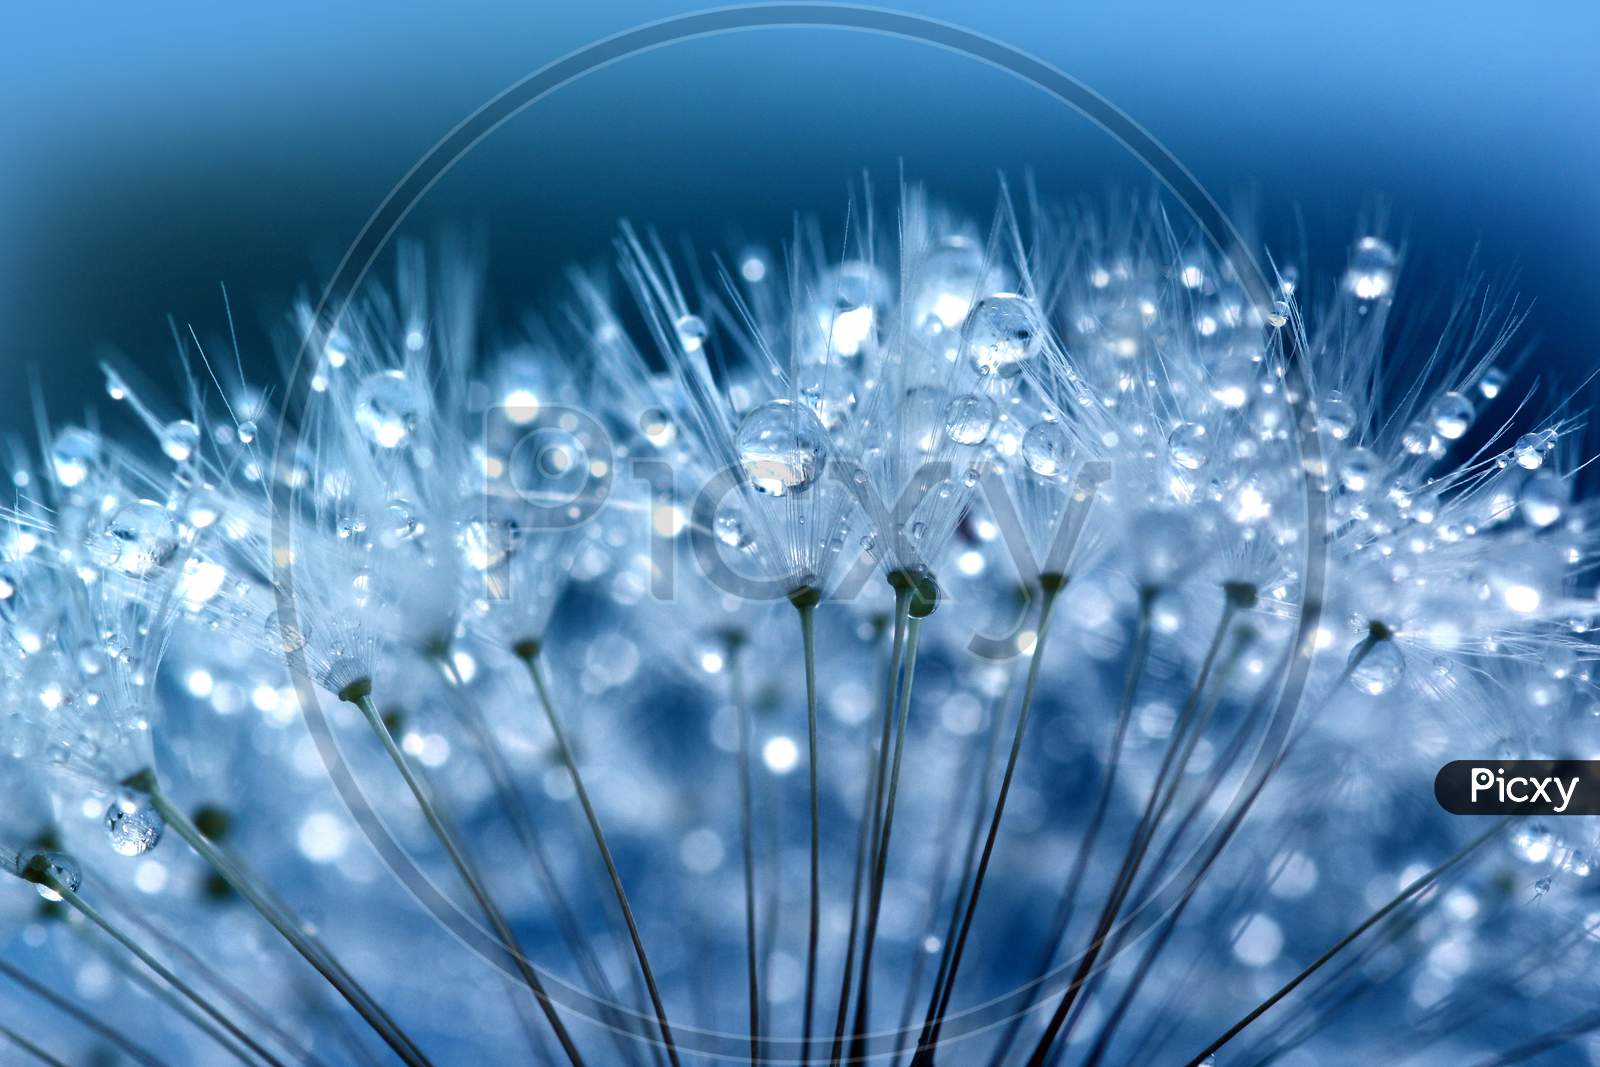 Water Droplets On Dandelion